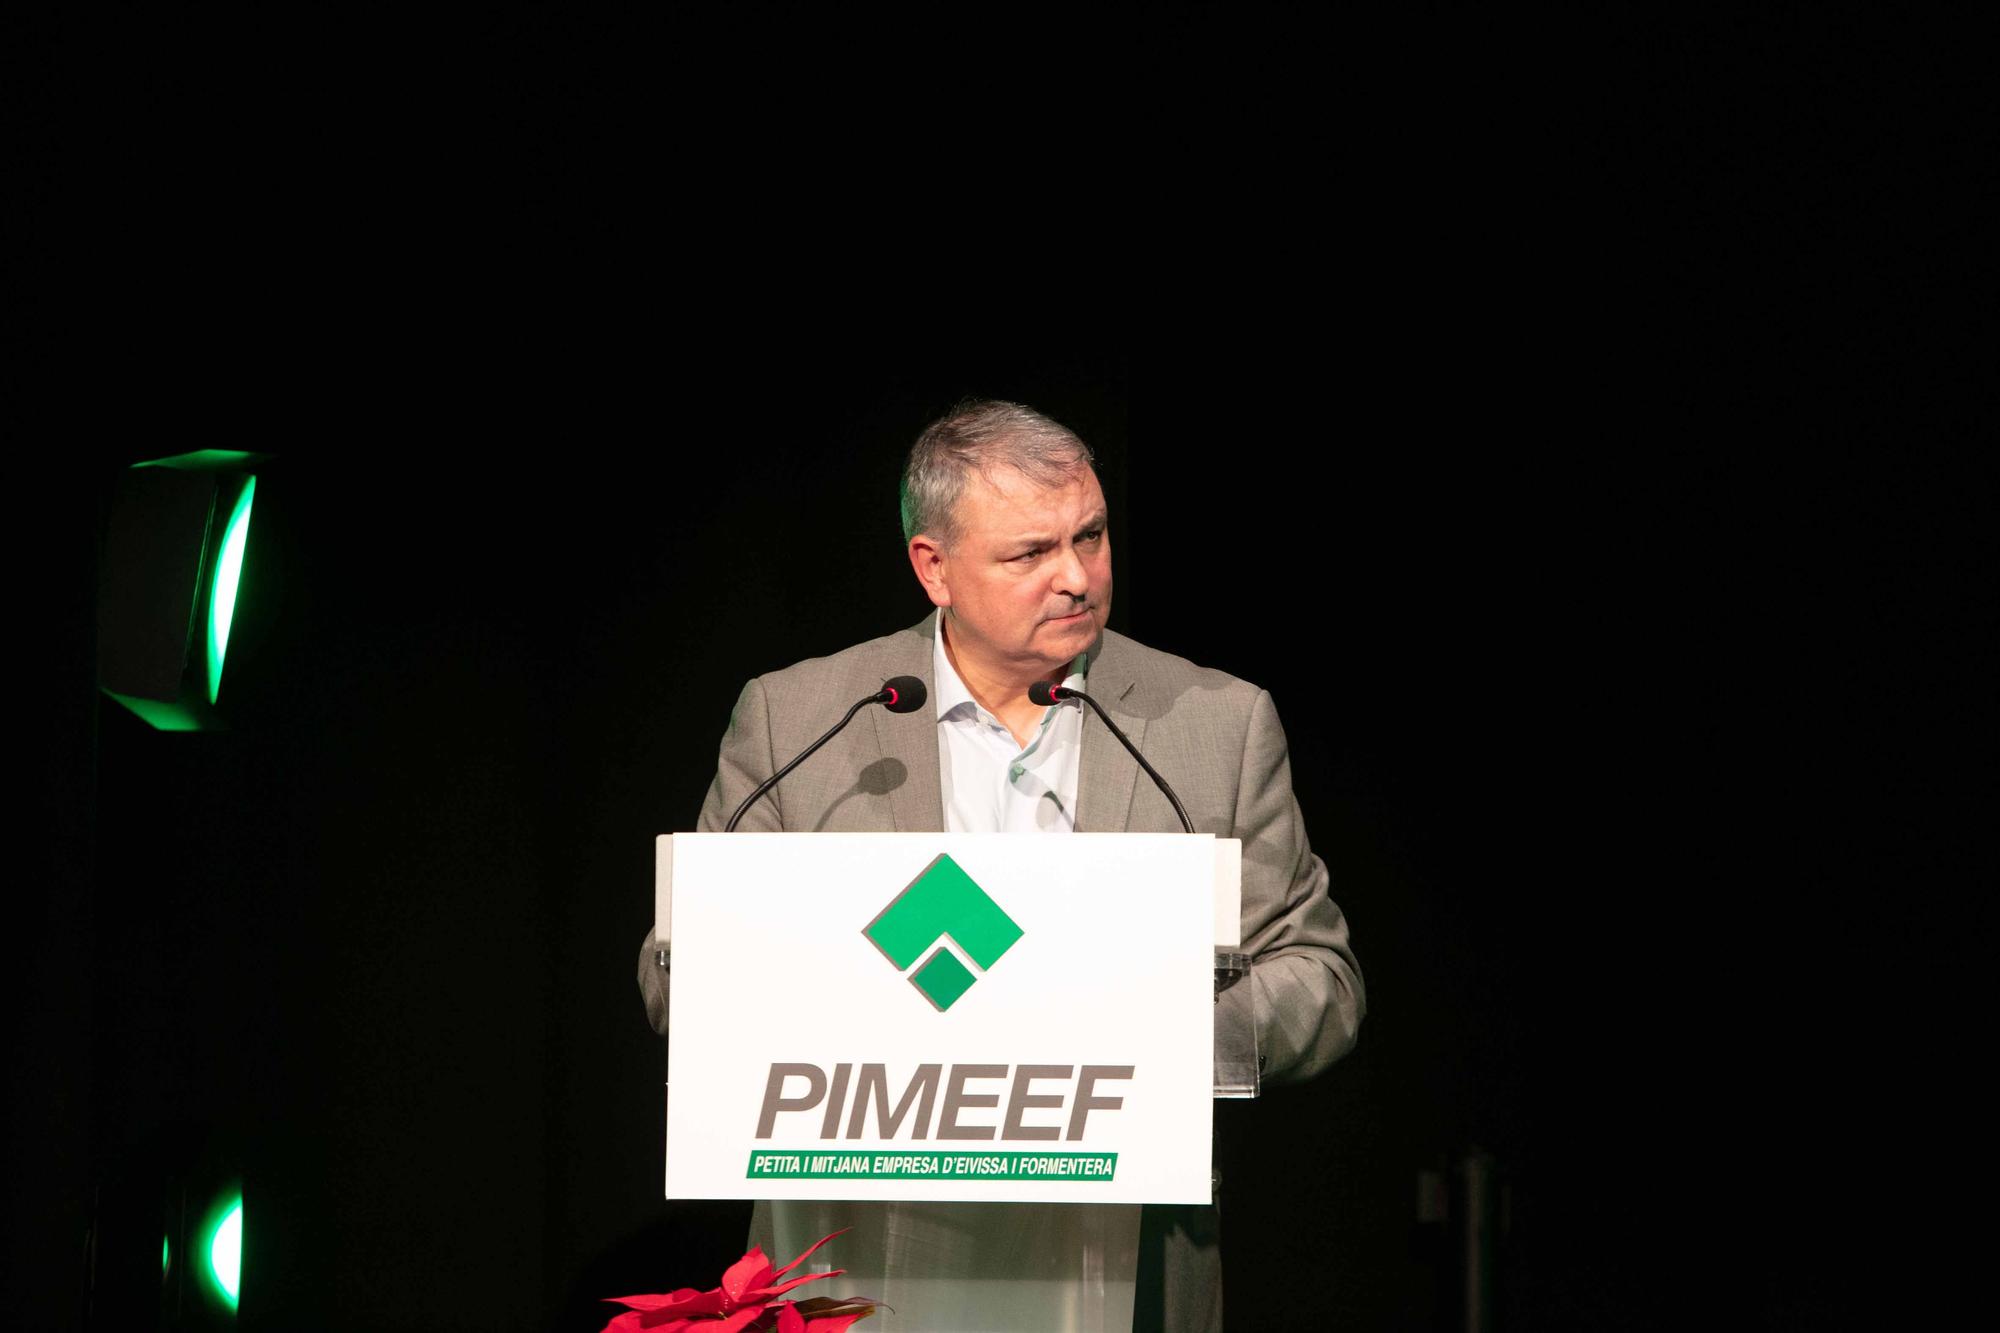 Premios Pimeef 2022